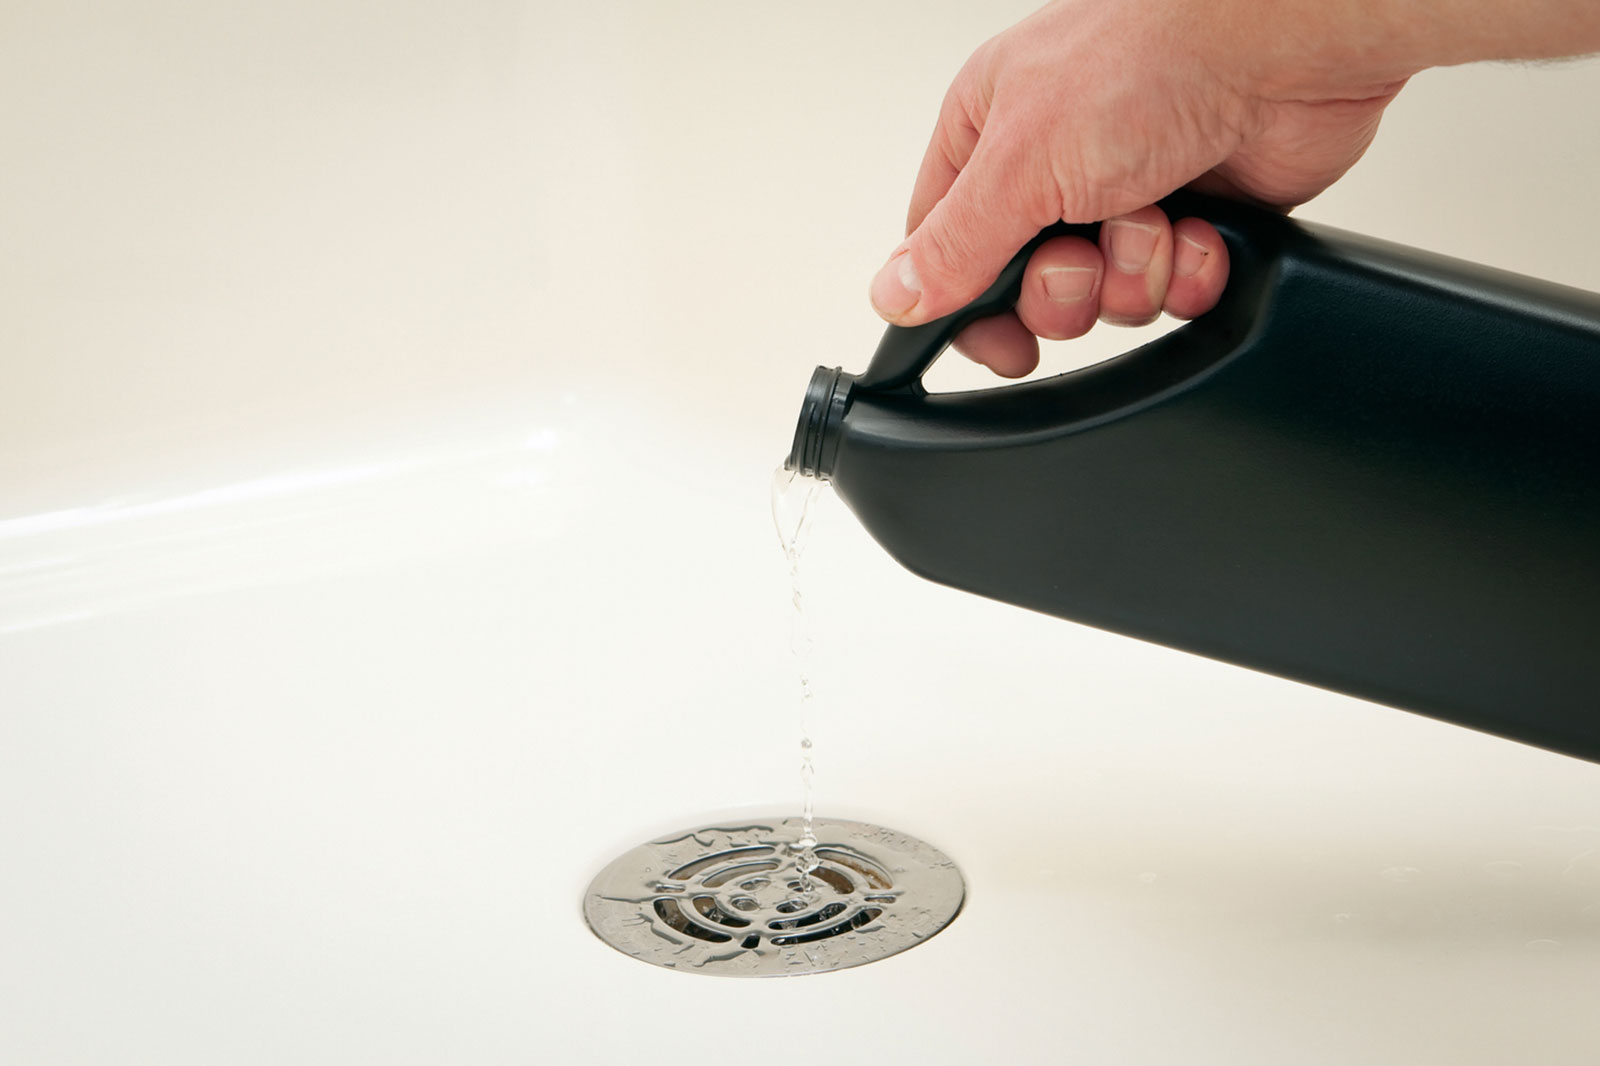 Pour your vinegar solution down the drain